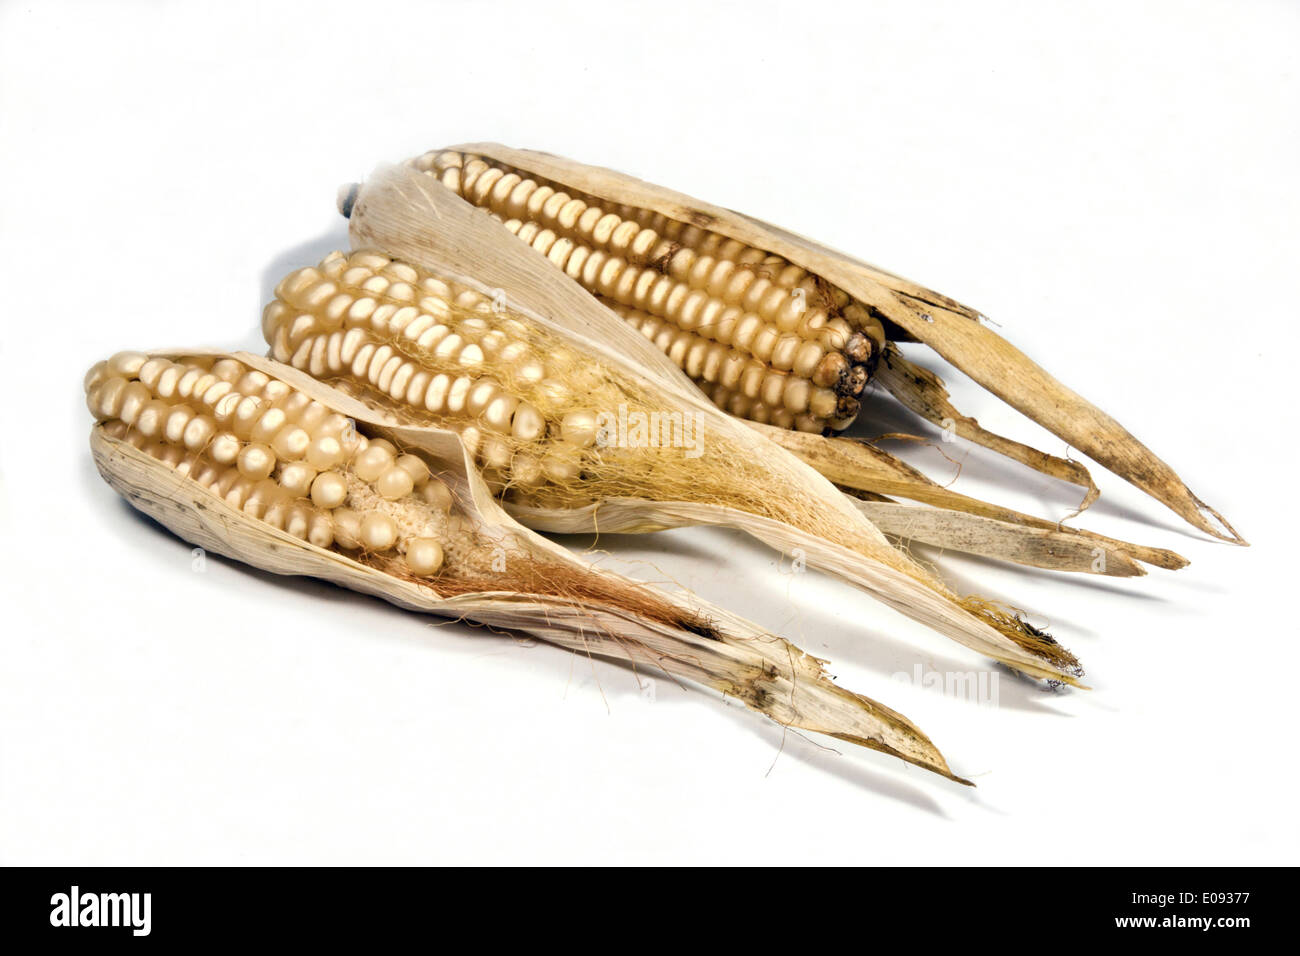 Les épis de maïs séchés d'une mauvaise campagne agricole Banque D'Images